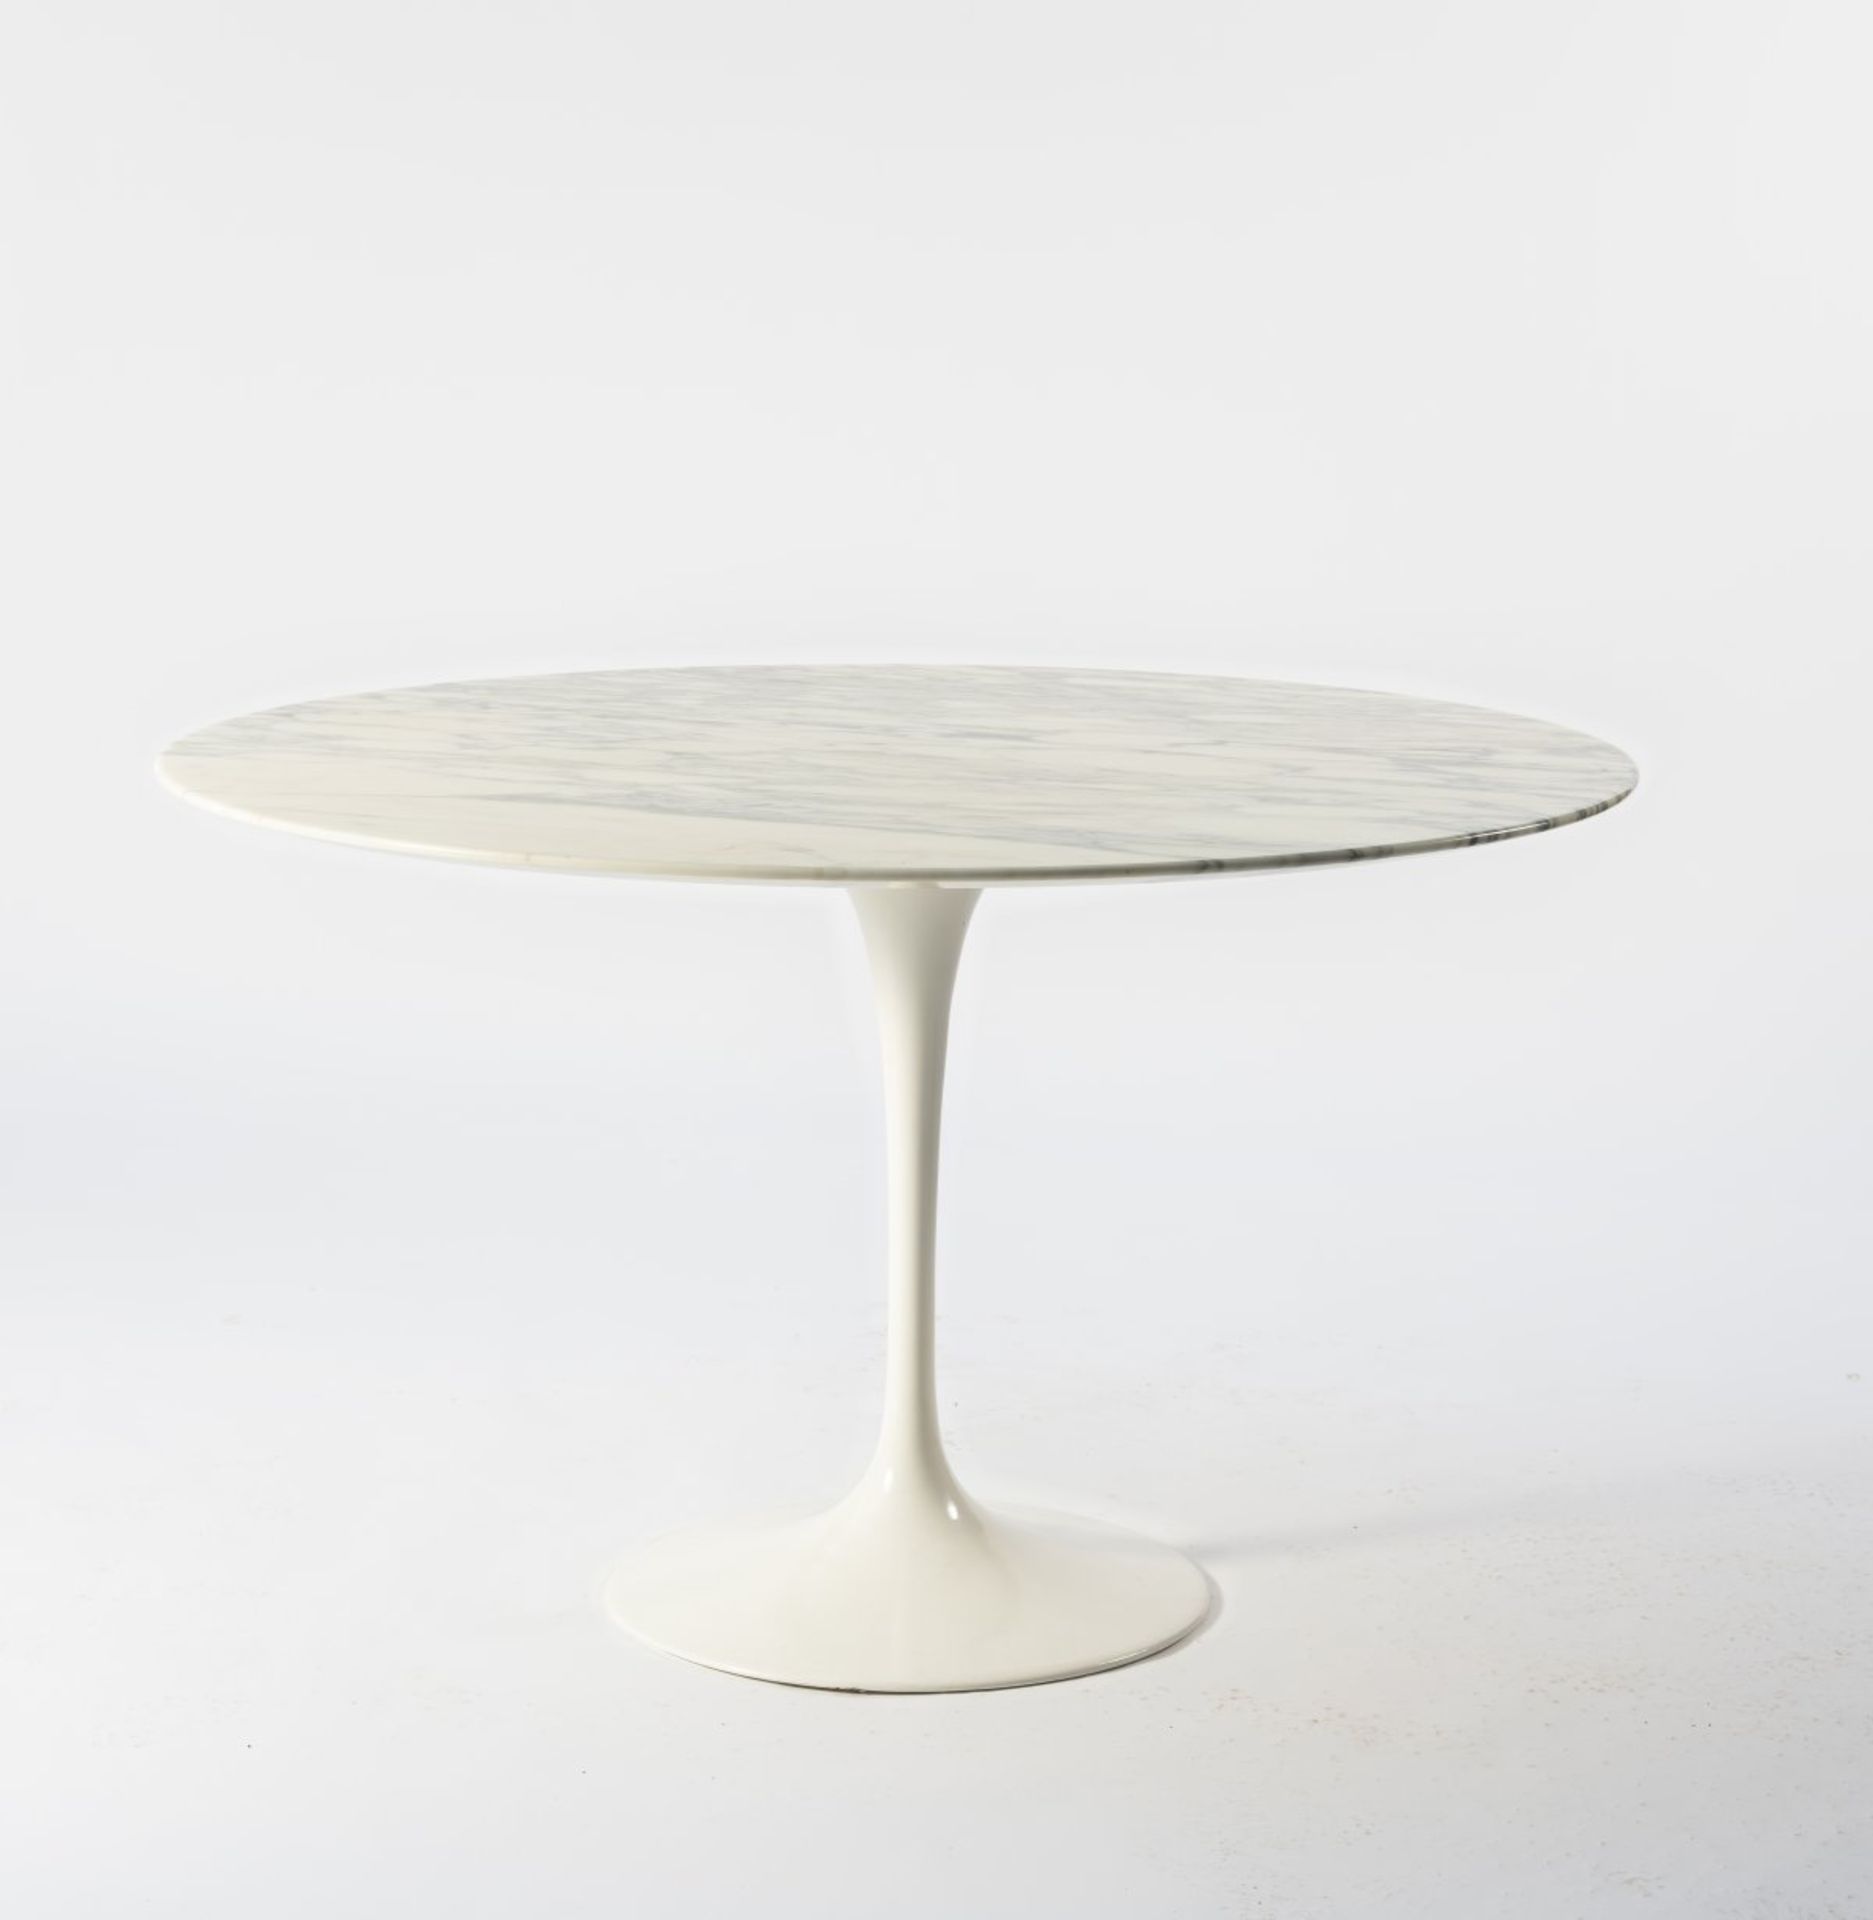 Eero Saarinen, Tisch 'Pedestal' - '164', 1956 - Bild 6 aus 6